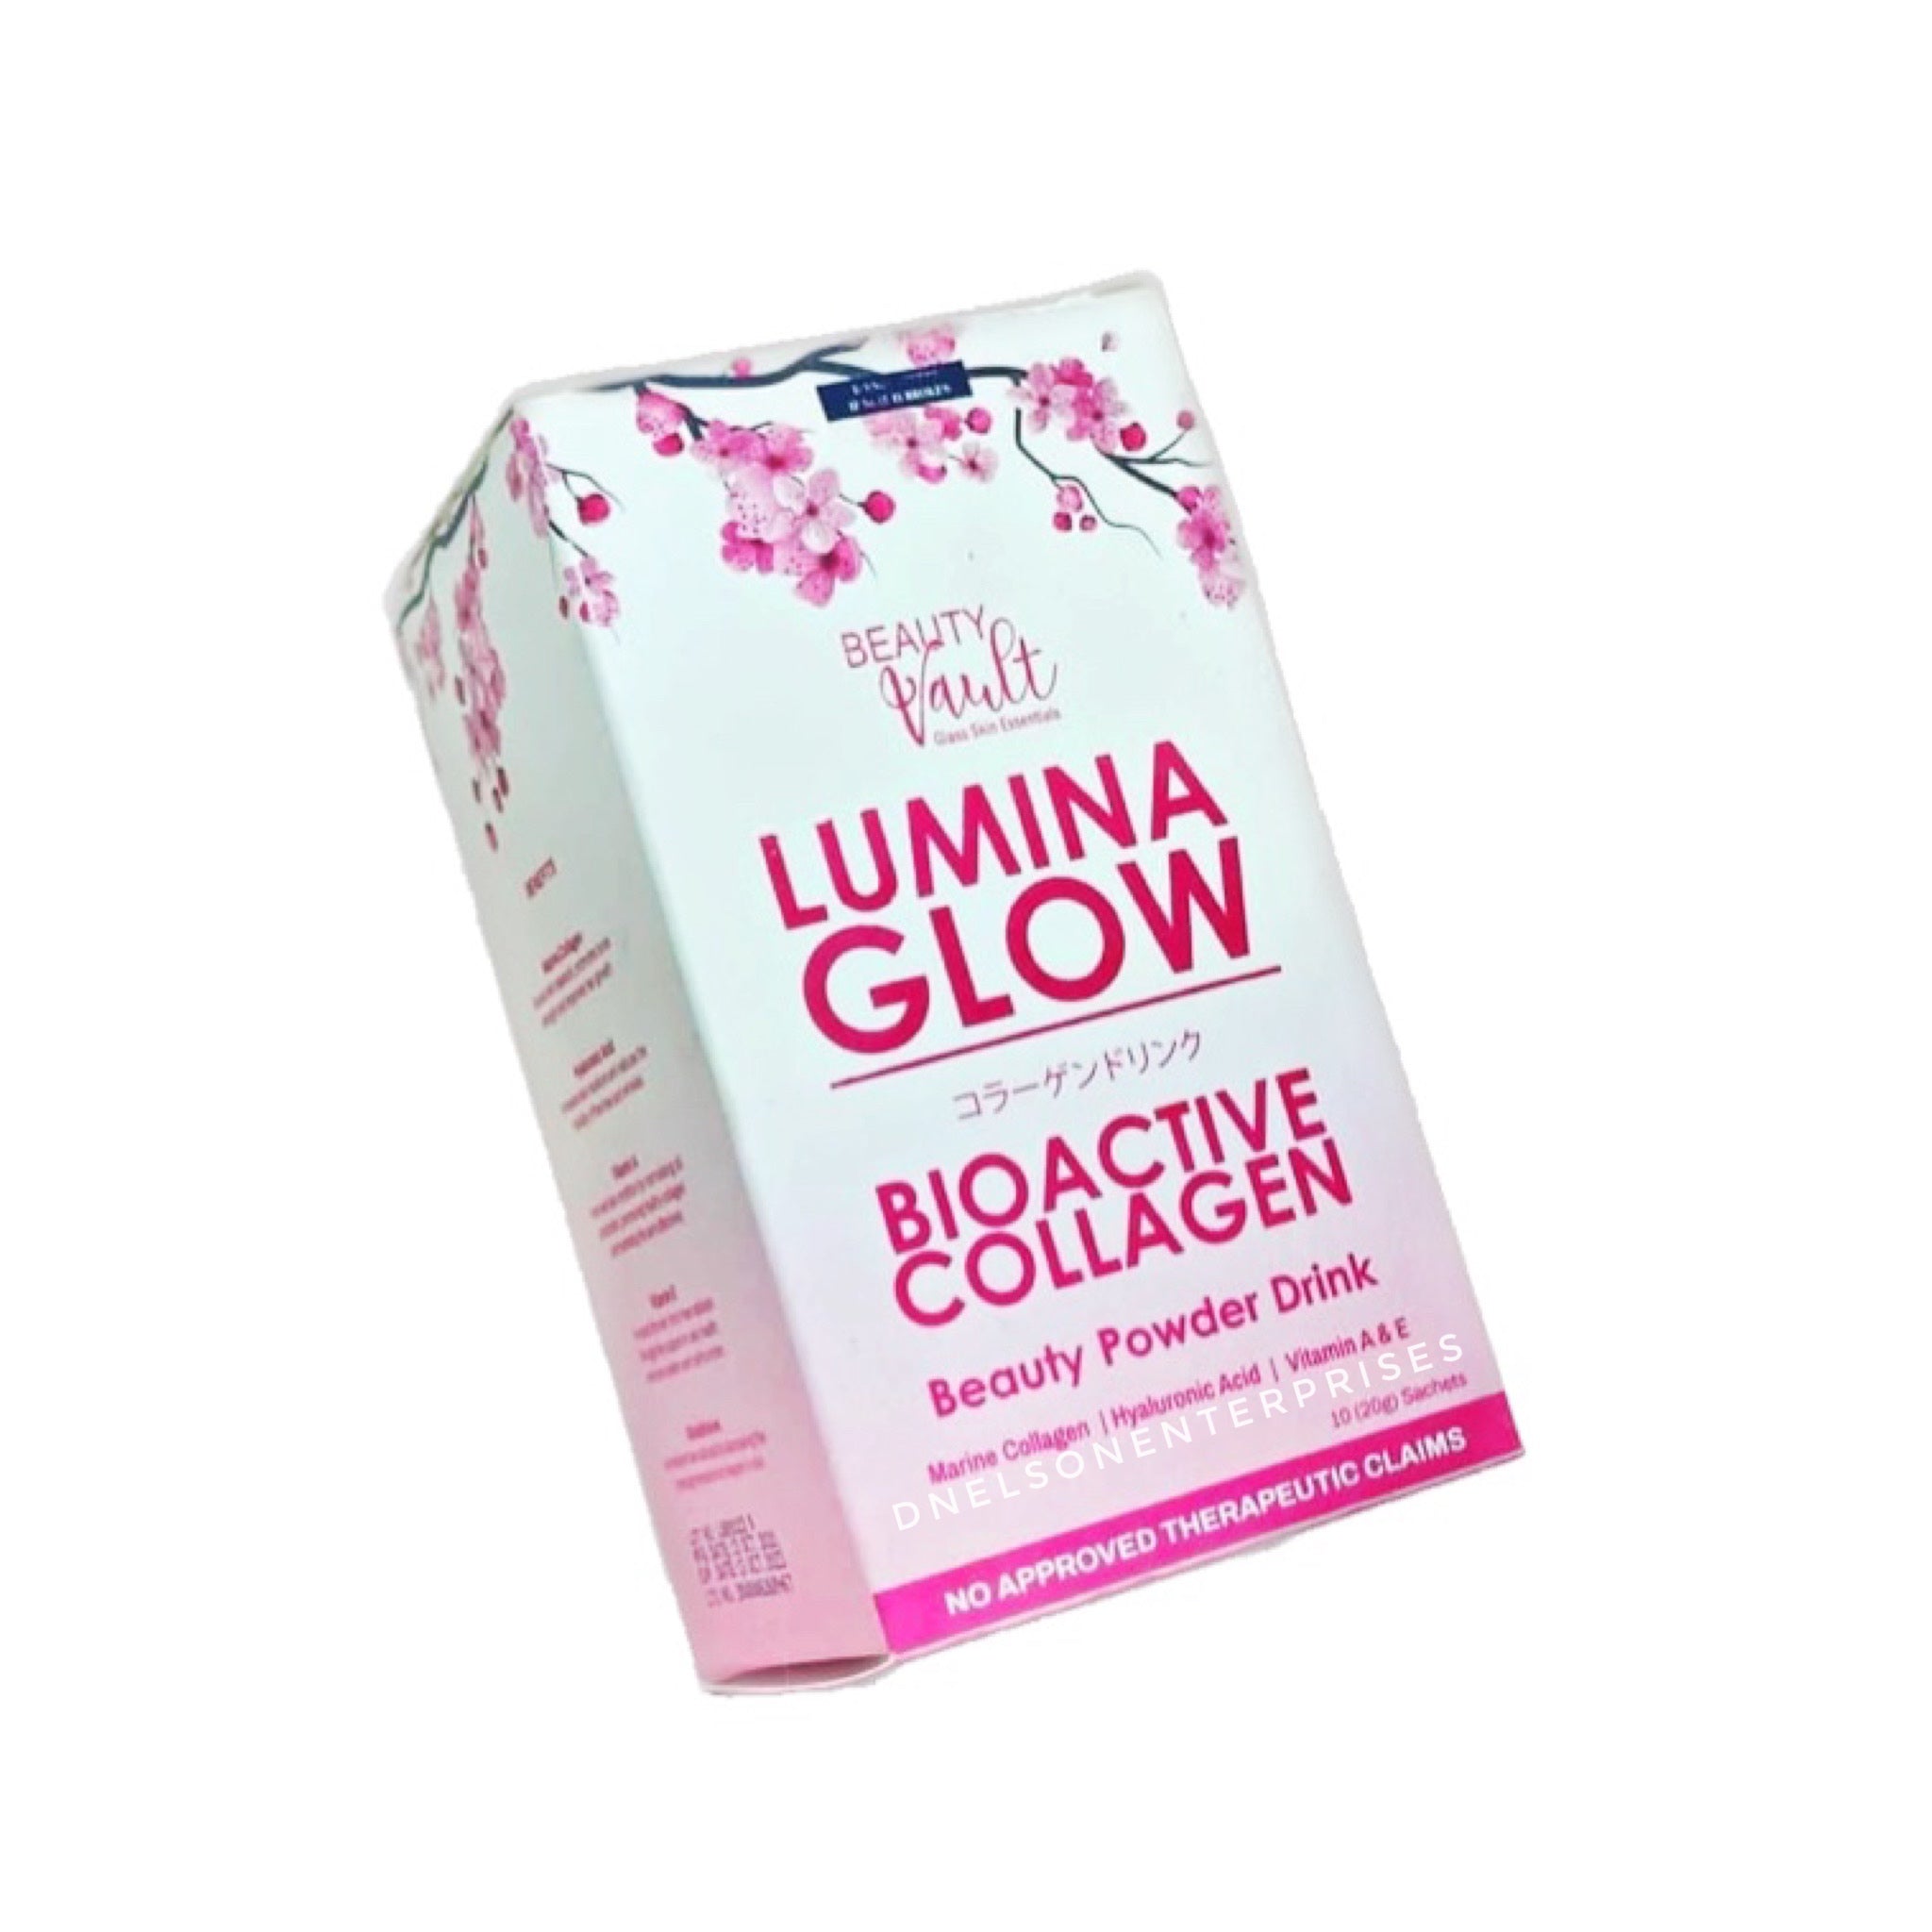 Lumina Glow Bioactive Collagen Powder Drink by Beauty Vault- EXPIRES JUNE 2024